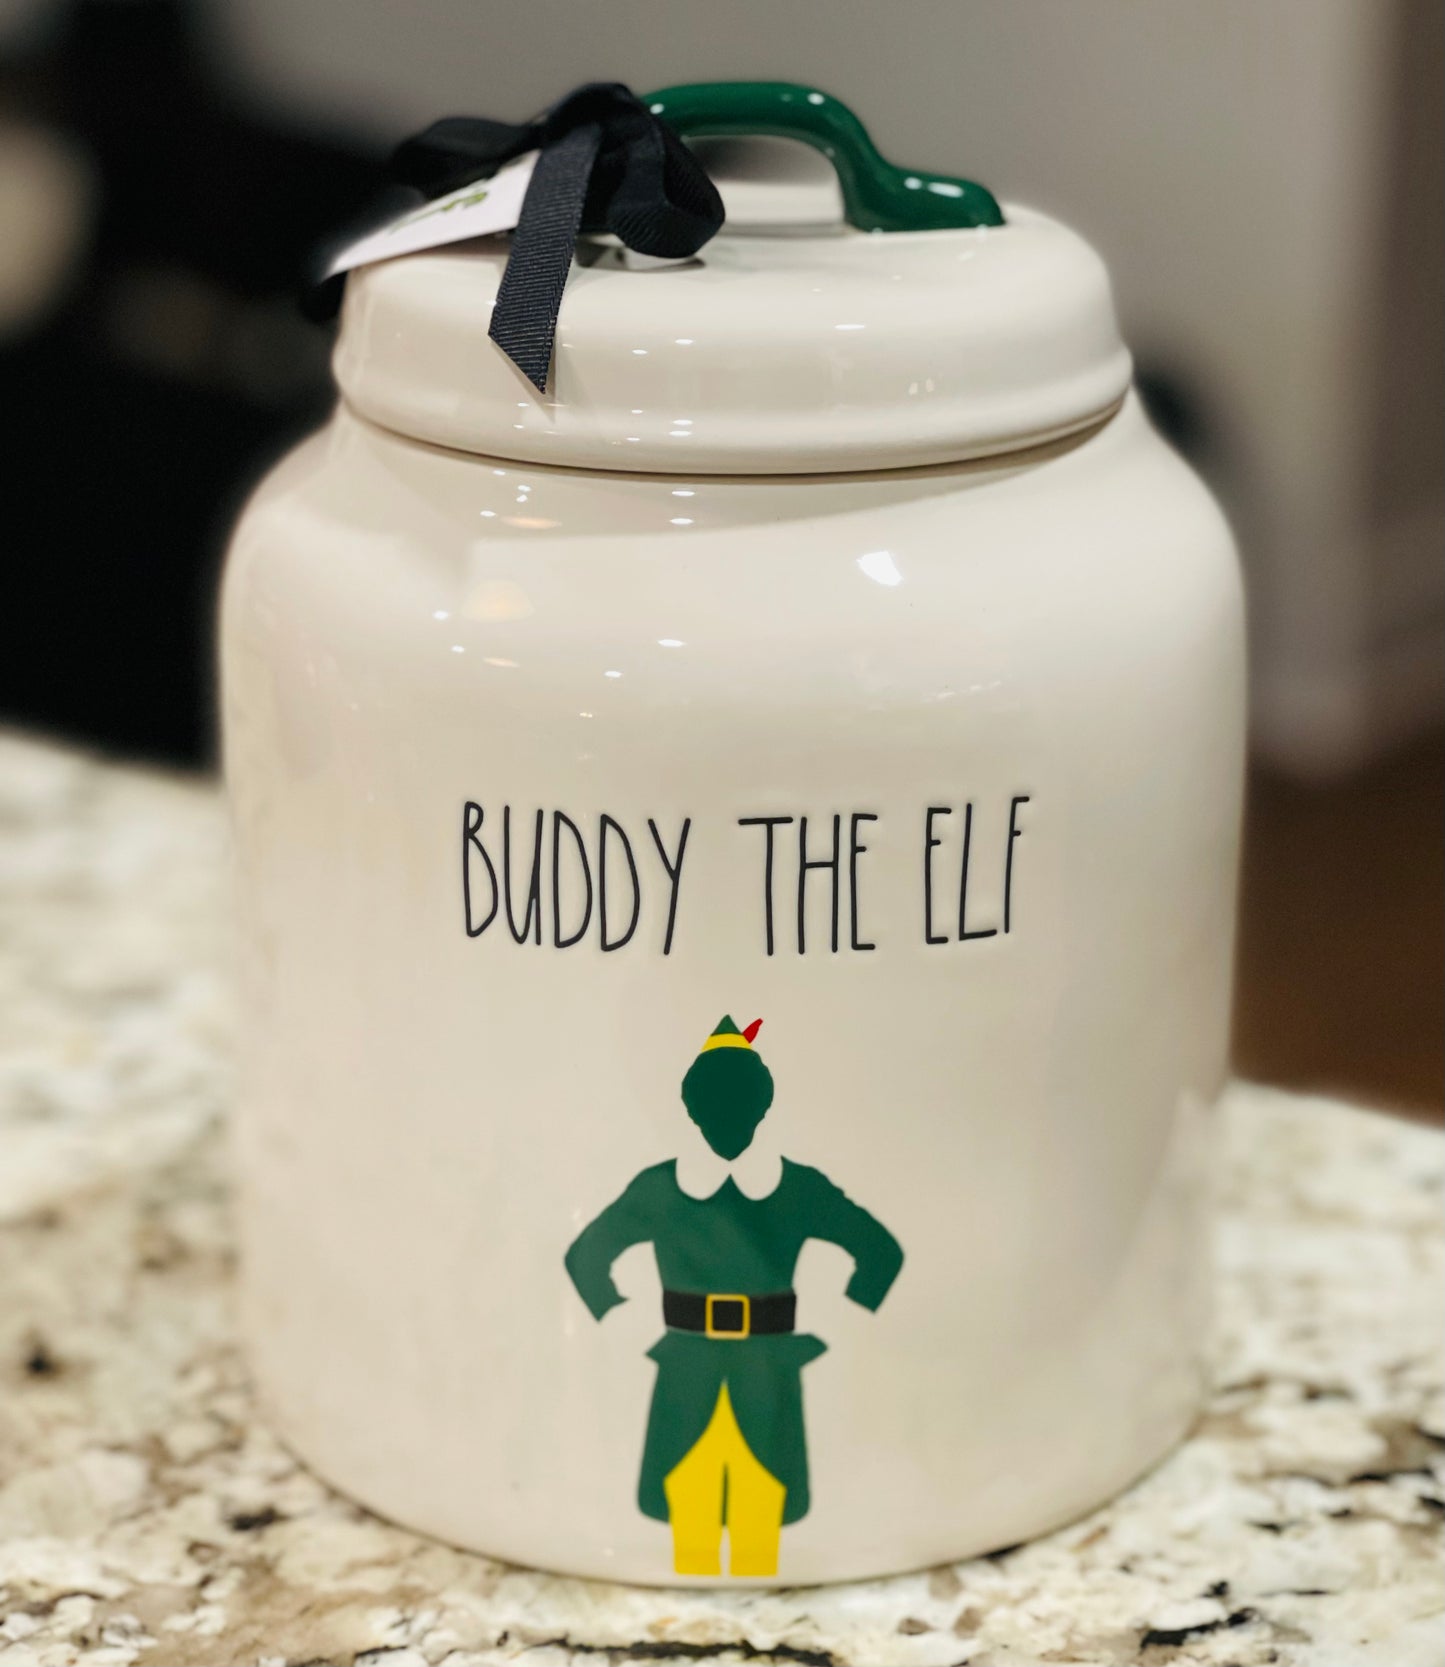 Buddy the Elf Rae Dunn Mug 